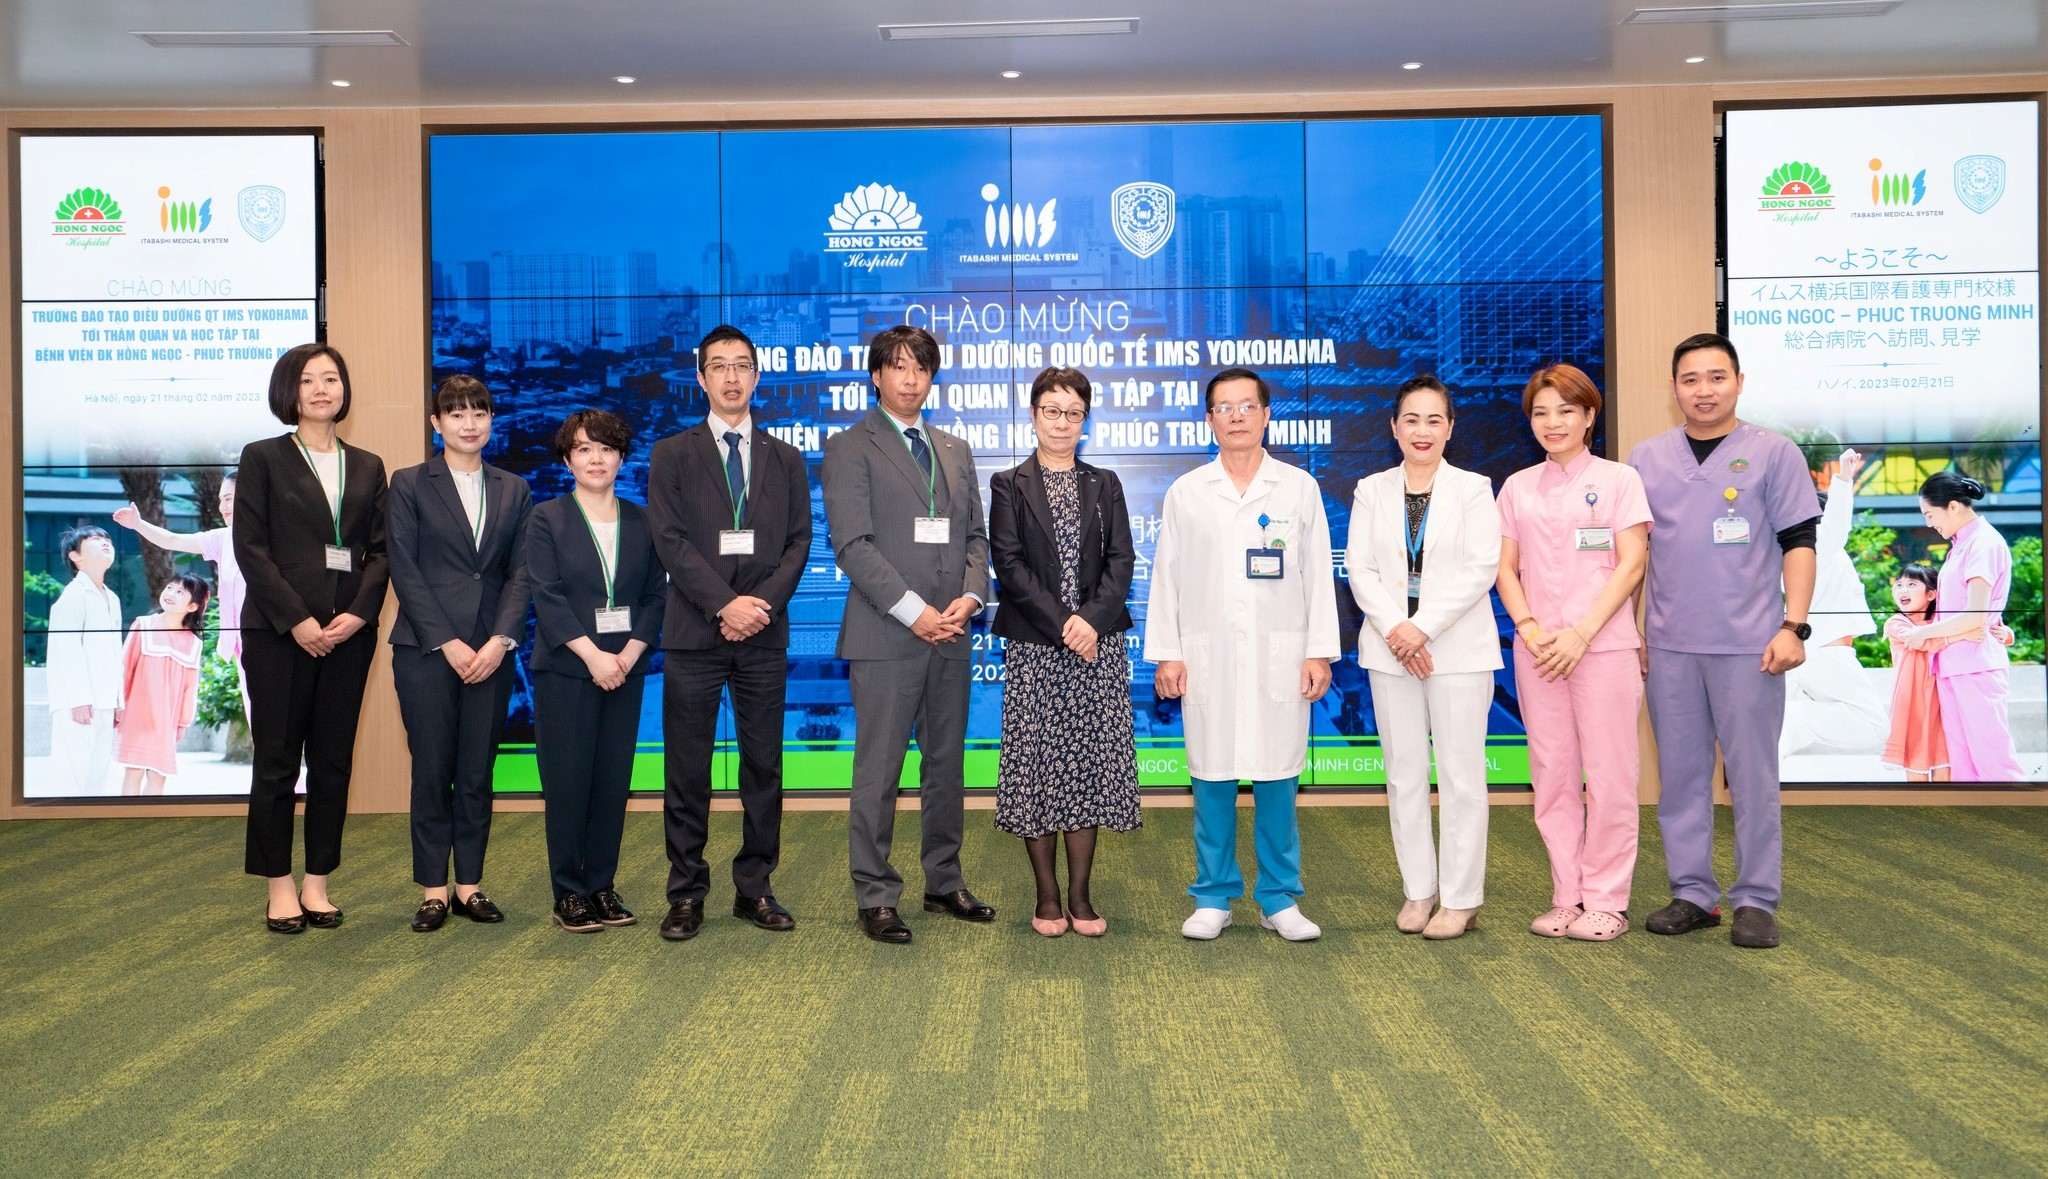 Trường Điều dưỡng Quốc tế IMS Yokohama tham quan và làm việc tại Bệnh viện Đa khoa Hồng Ngọc – Phúc Trường Minh